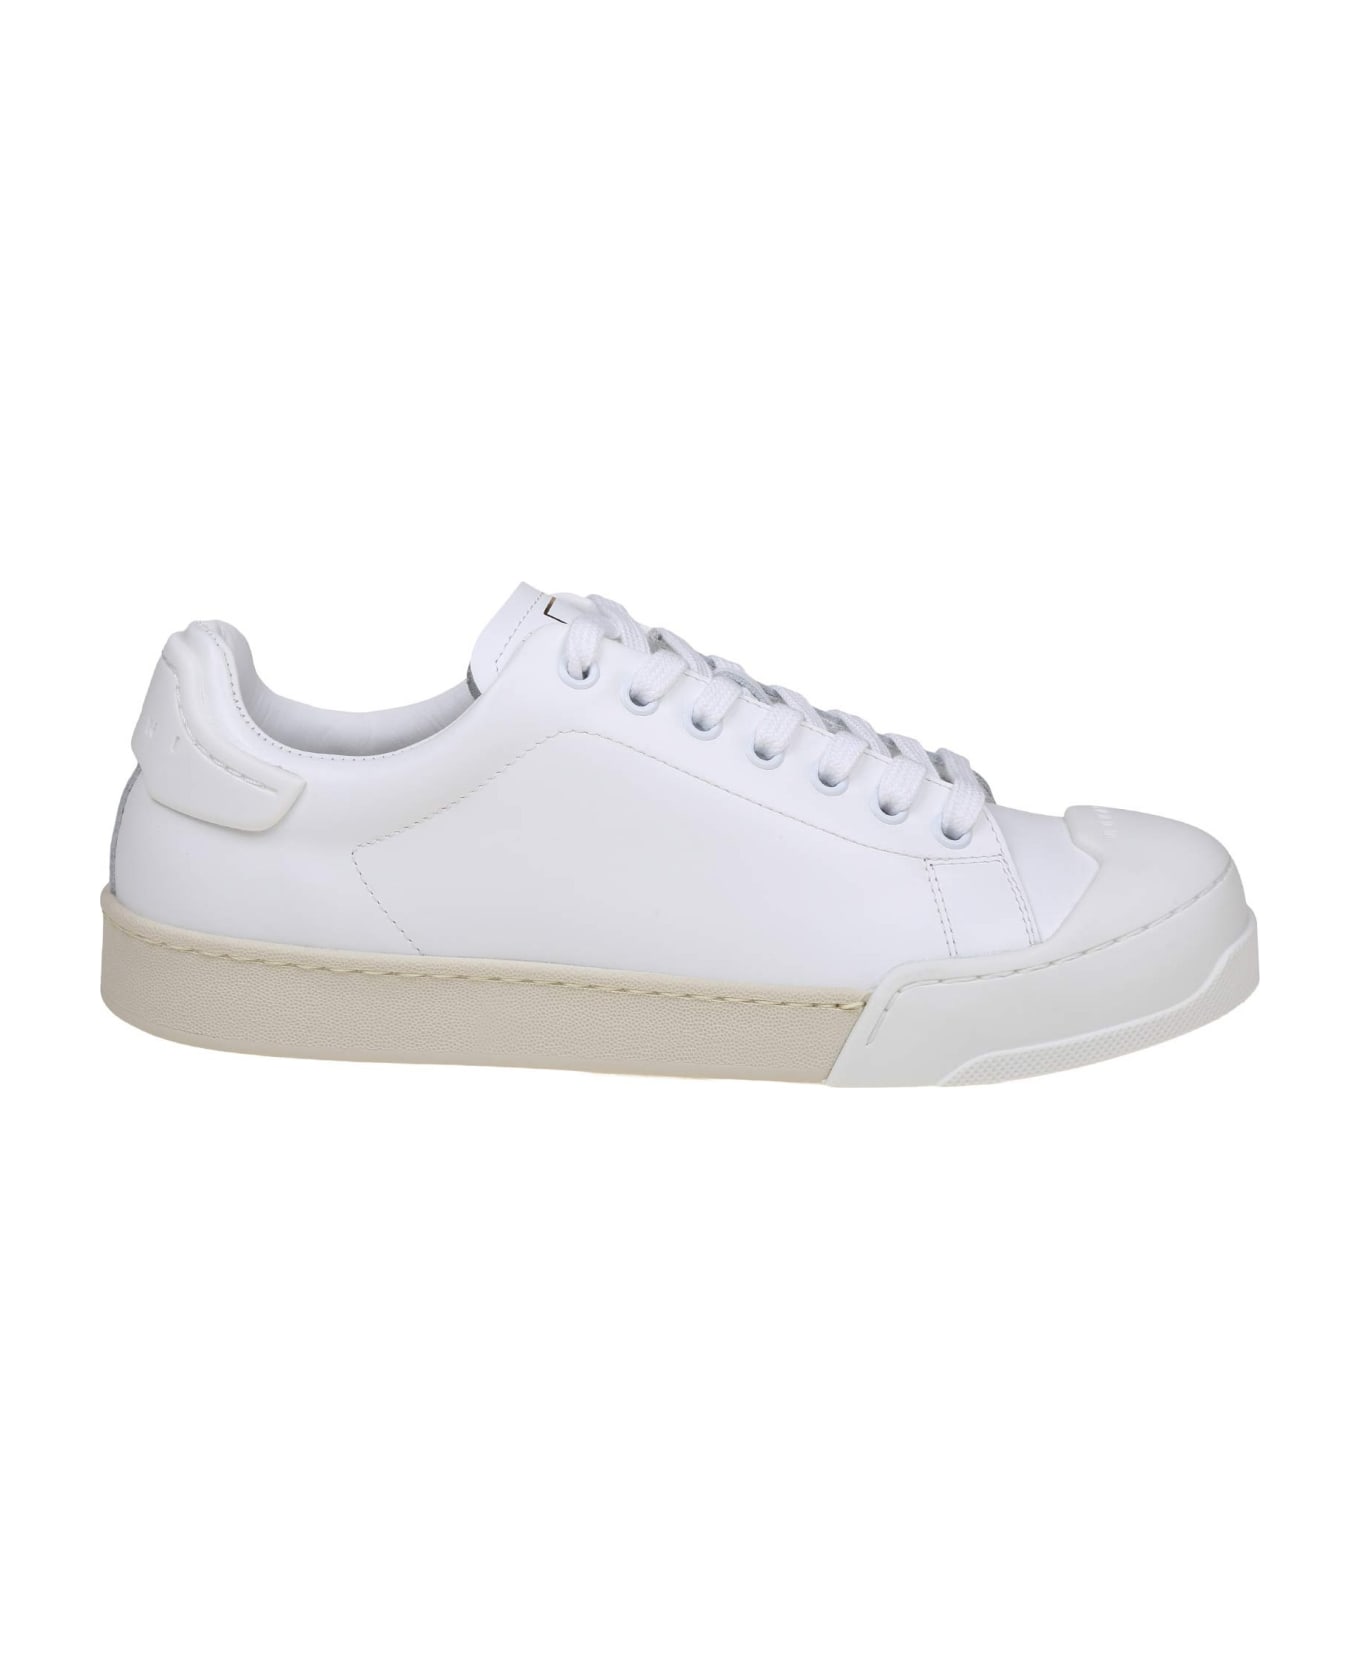 Marni Dada Bumper Sneakers In White Leather - WHITE